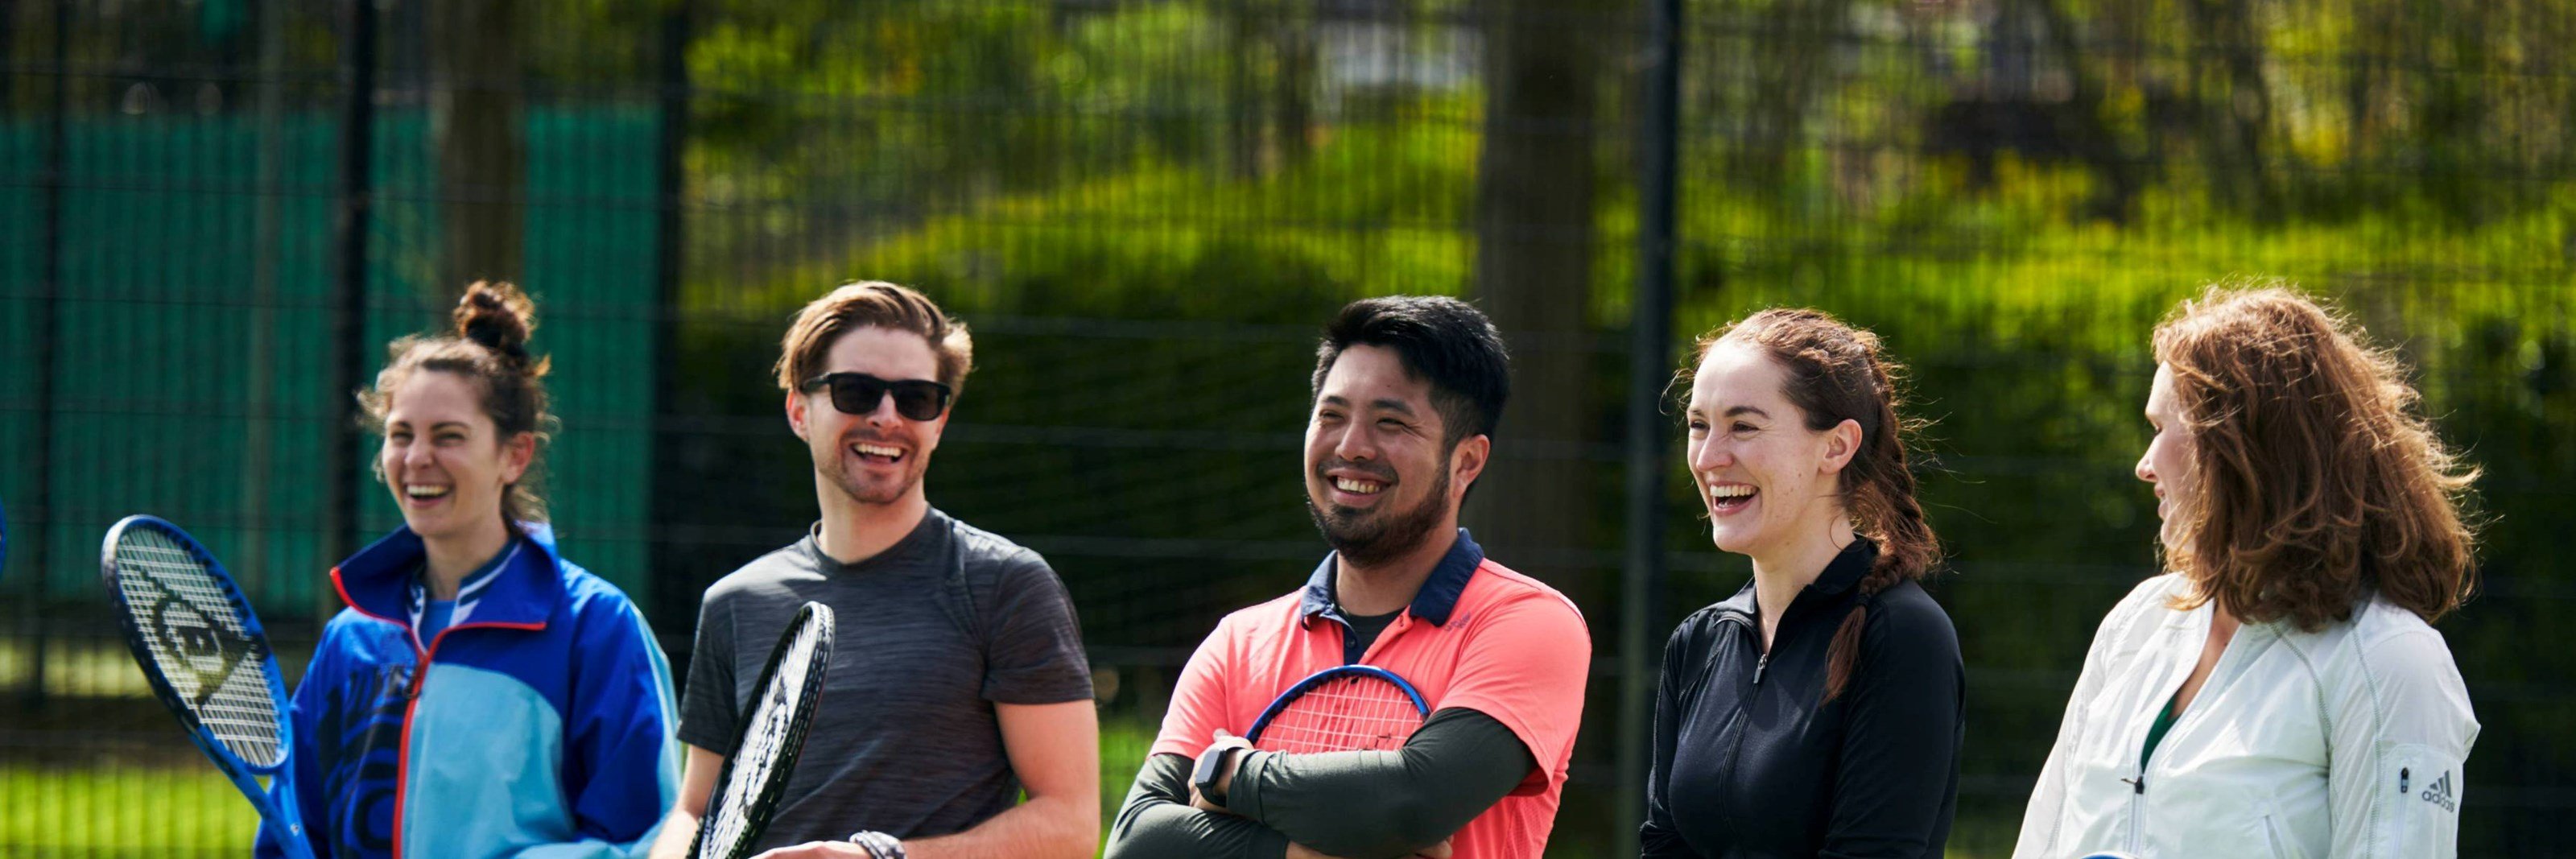 自由公园网球运动员一起在球场上大笑